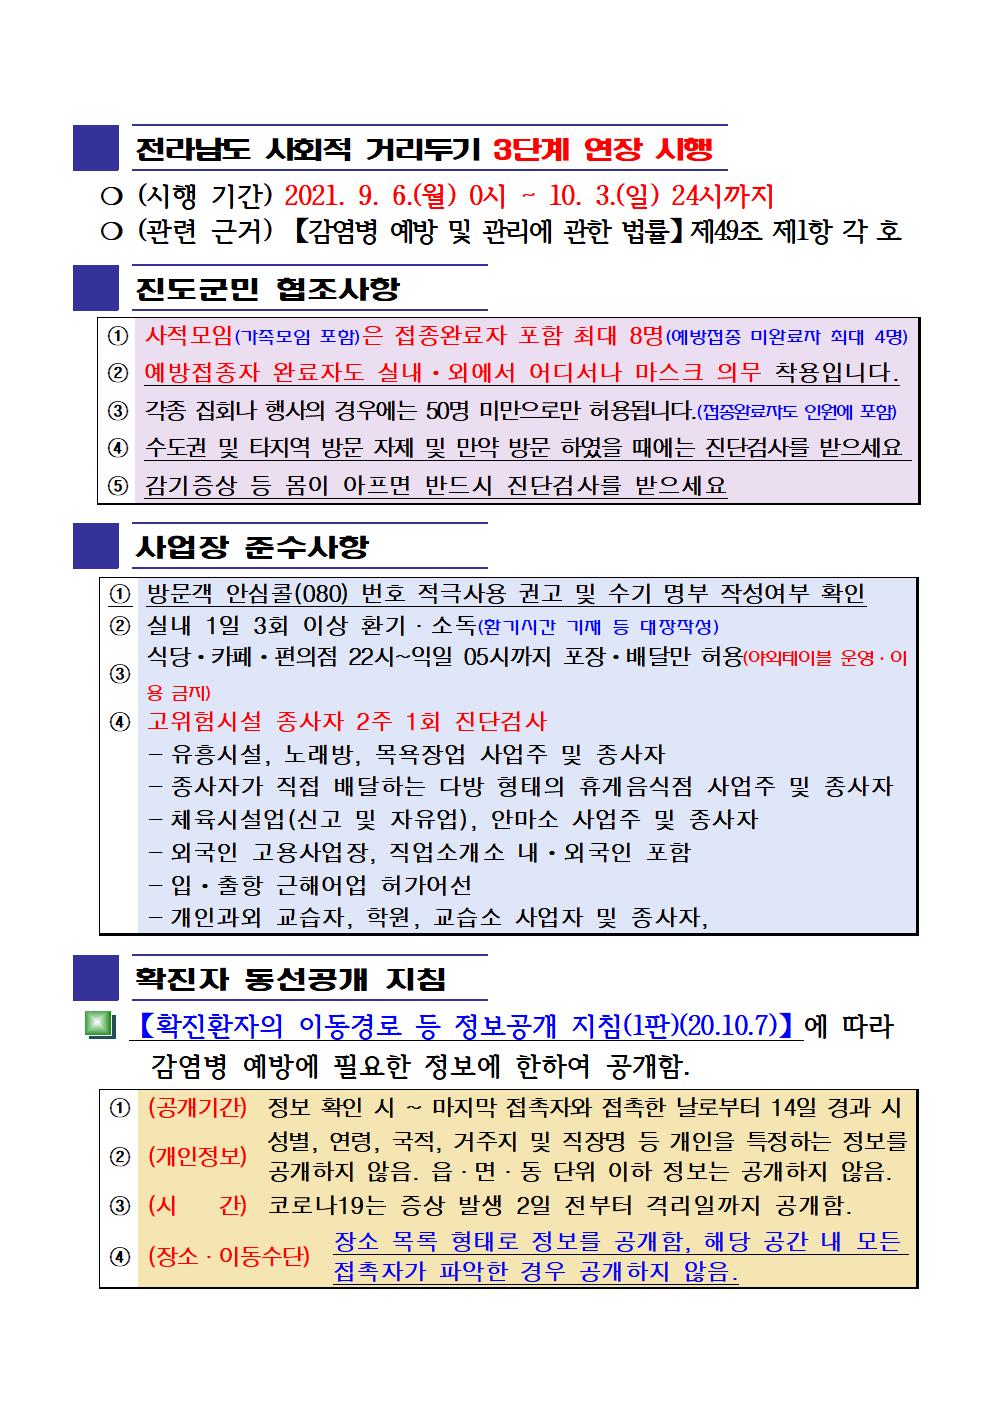 2021년 코로나19 대응 일일상황보고(9월 16일 24시 기준) 첨부#2